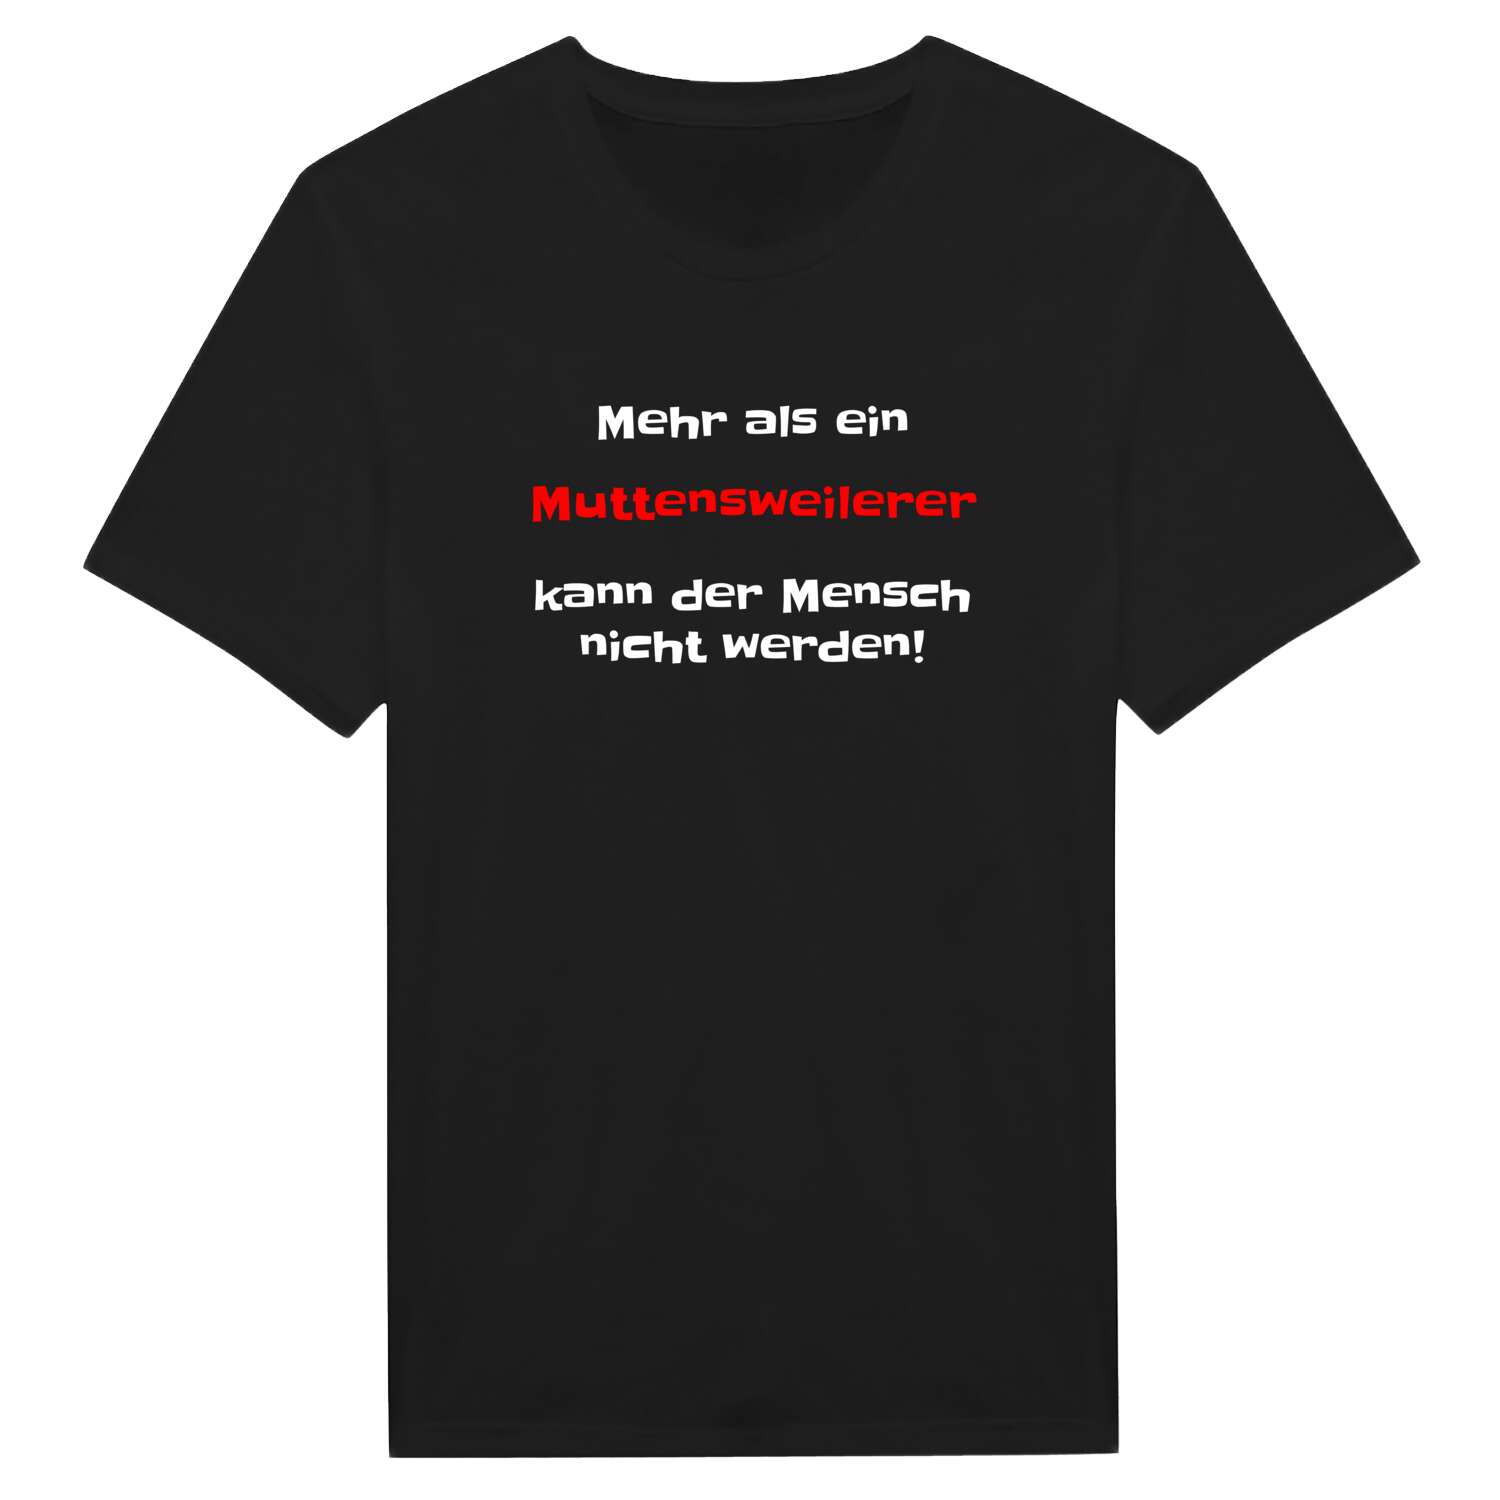 Muttensweiler T-Shirt »Mehr als ein«